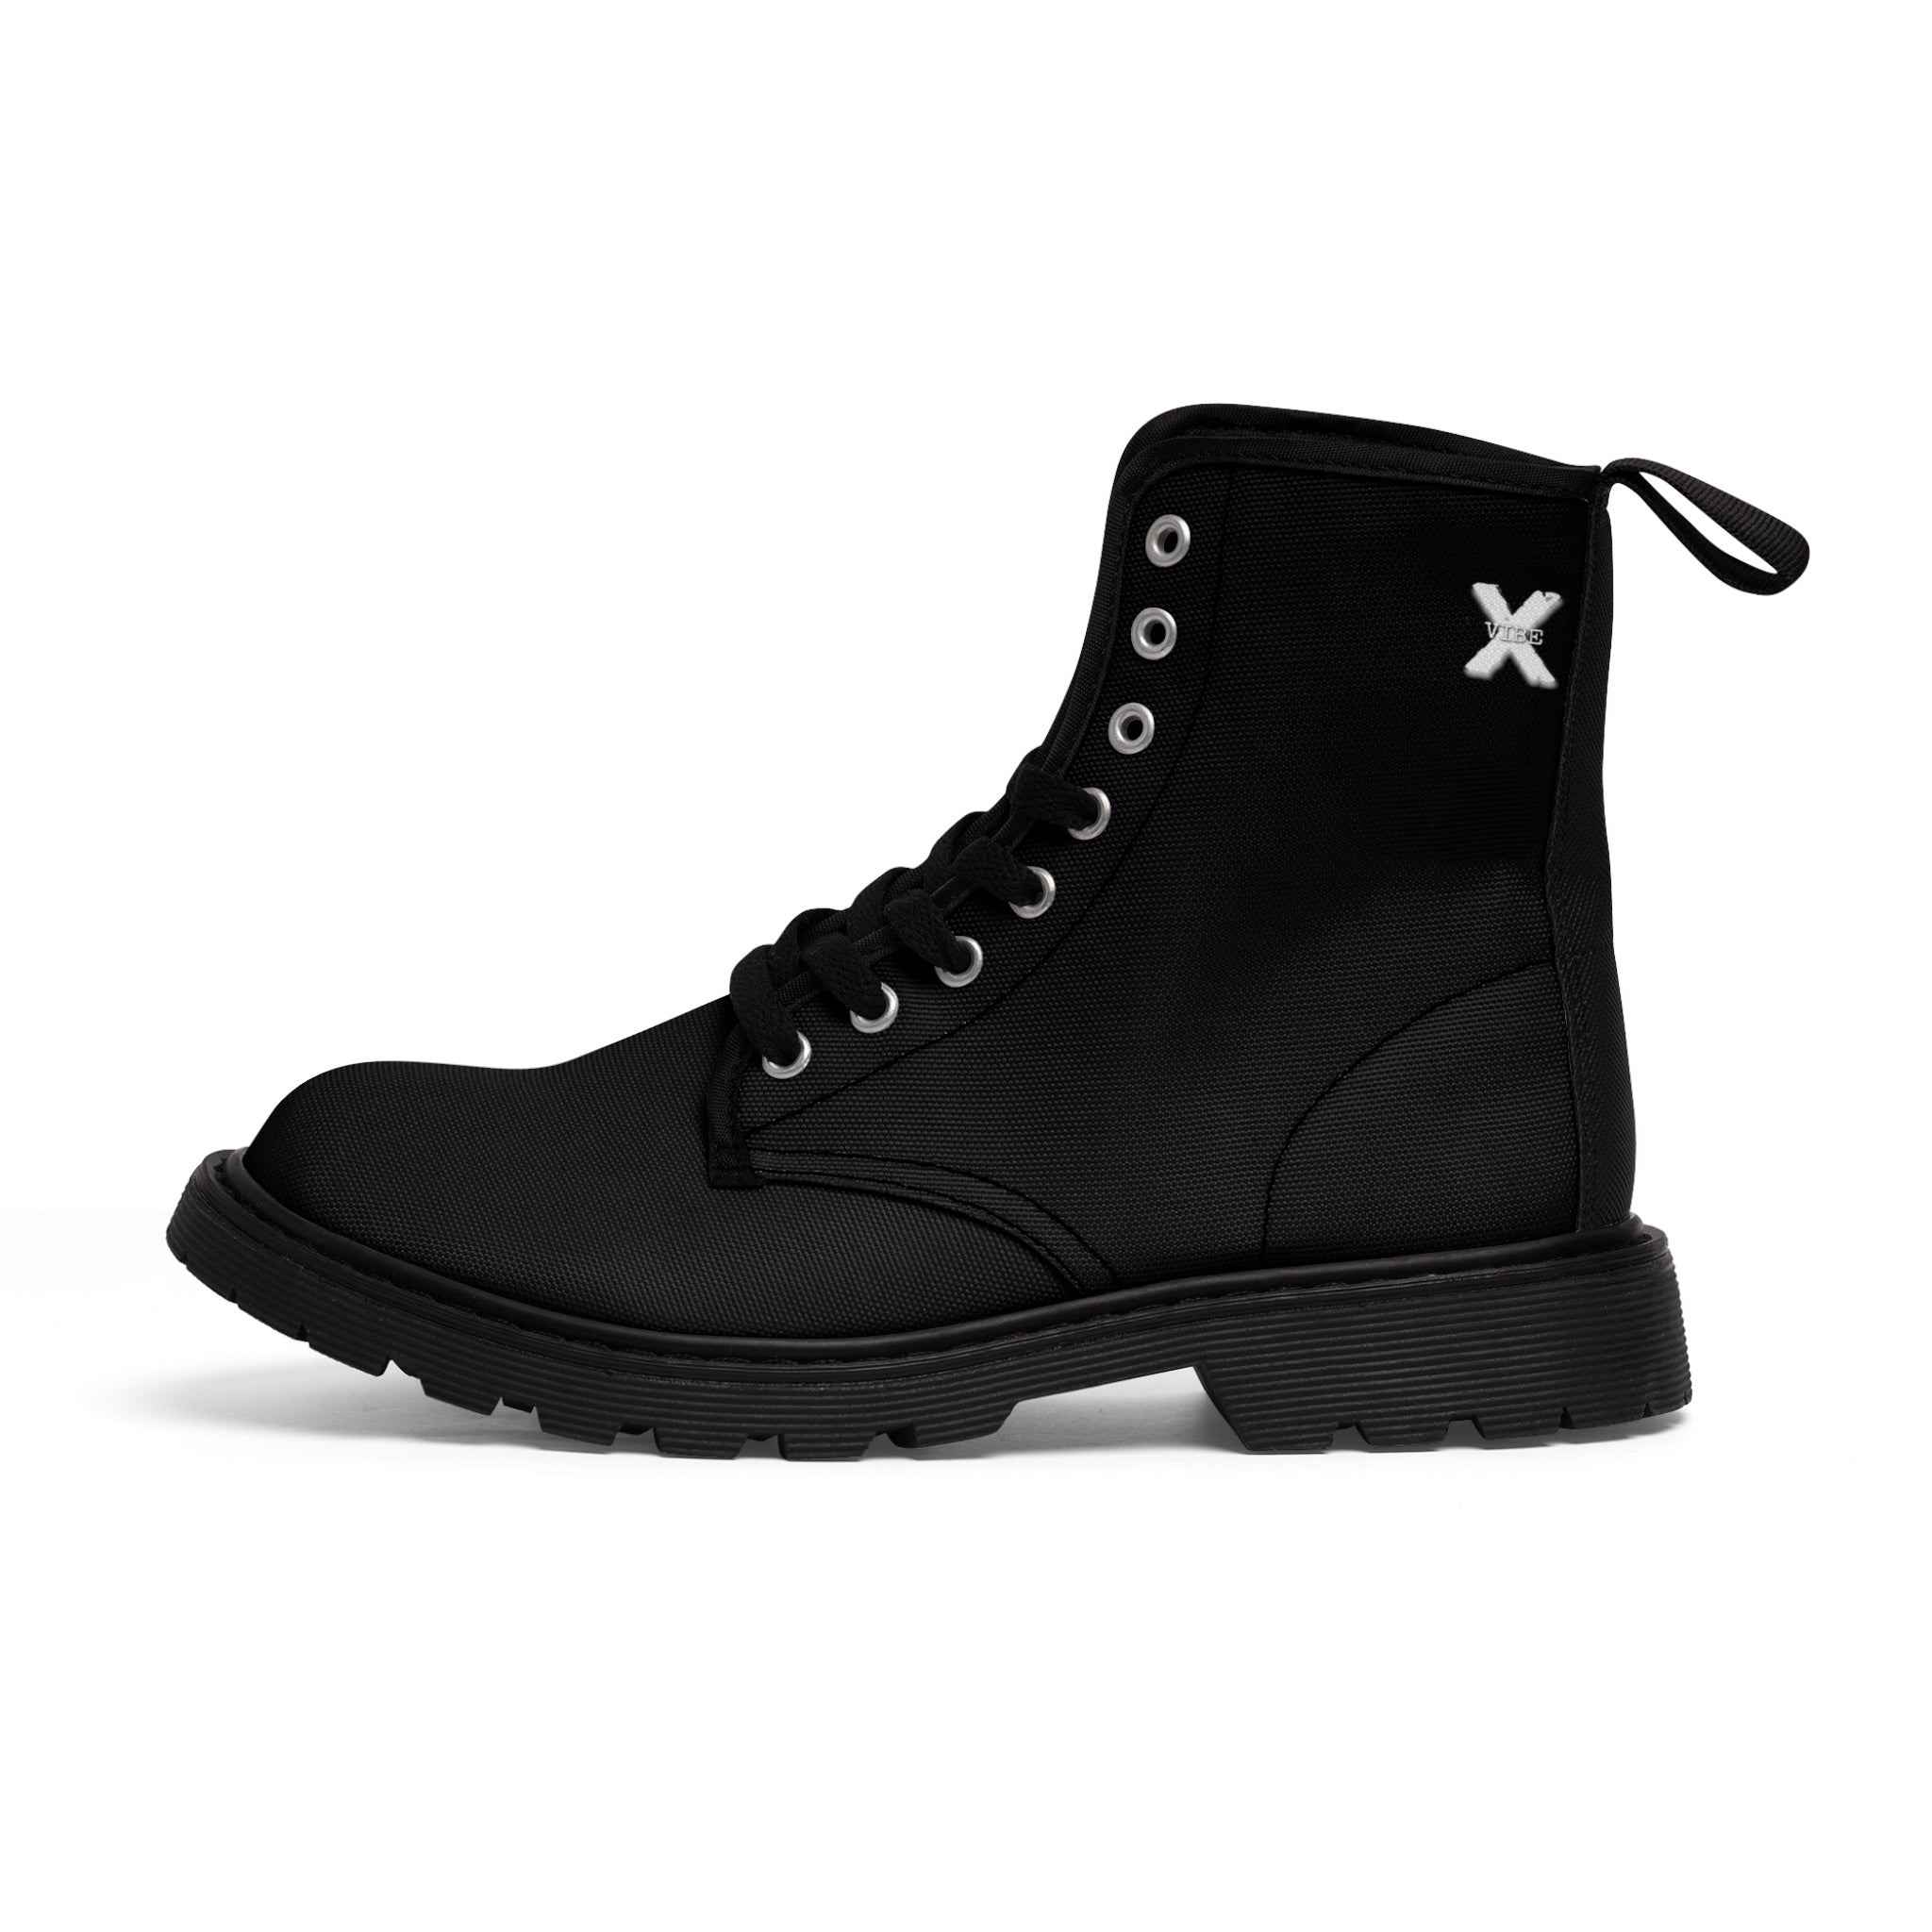 X-Vibe Men's Canvas Boots (Black/W)